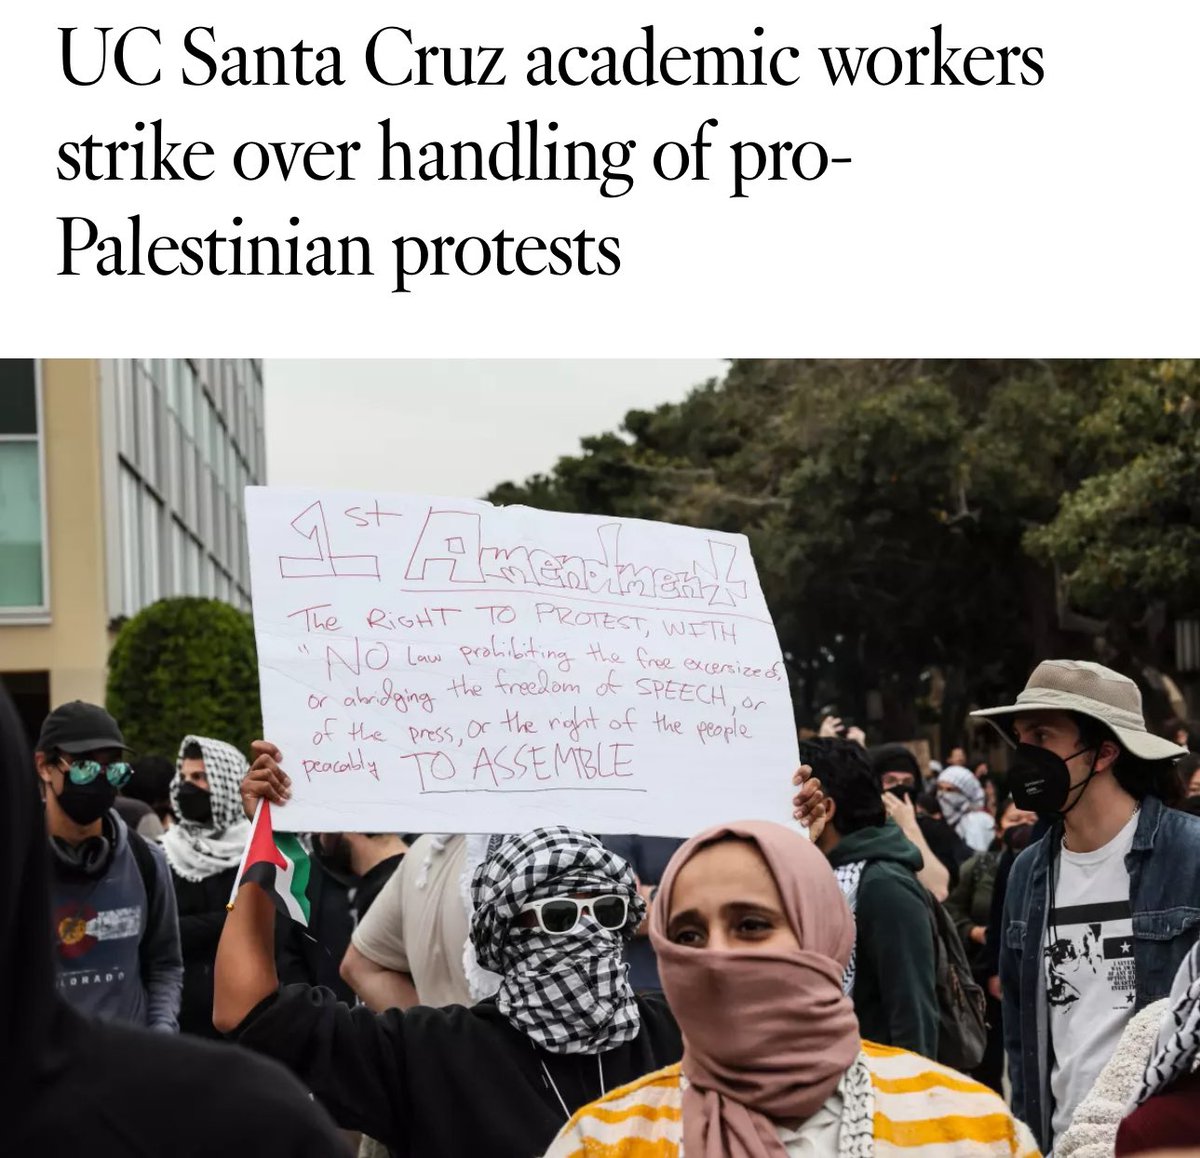 Academic workers at UC Santa Cruz are on strike!